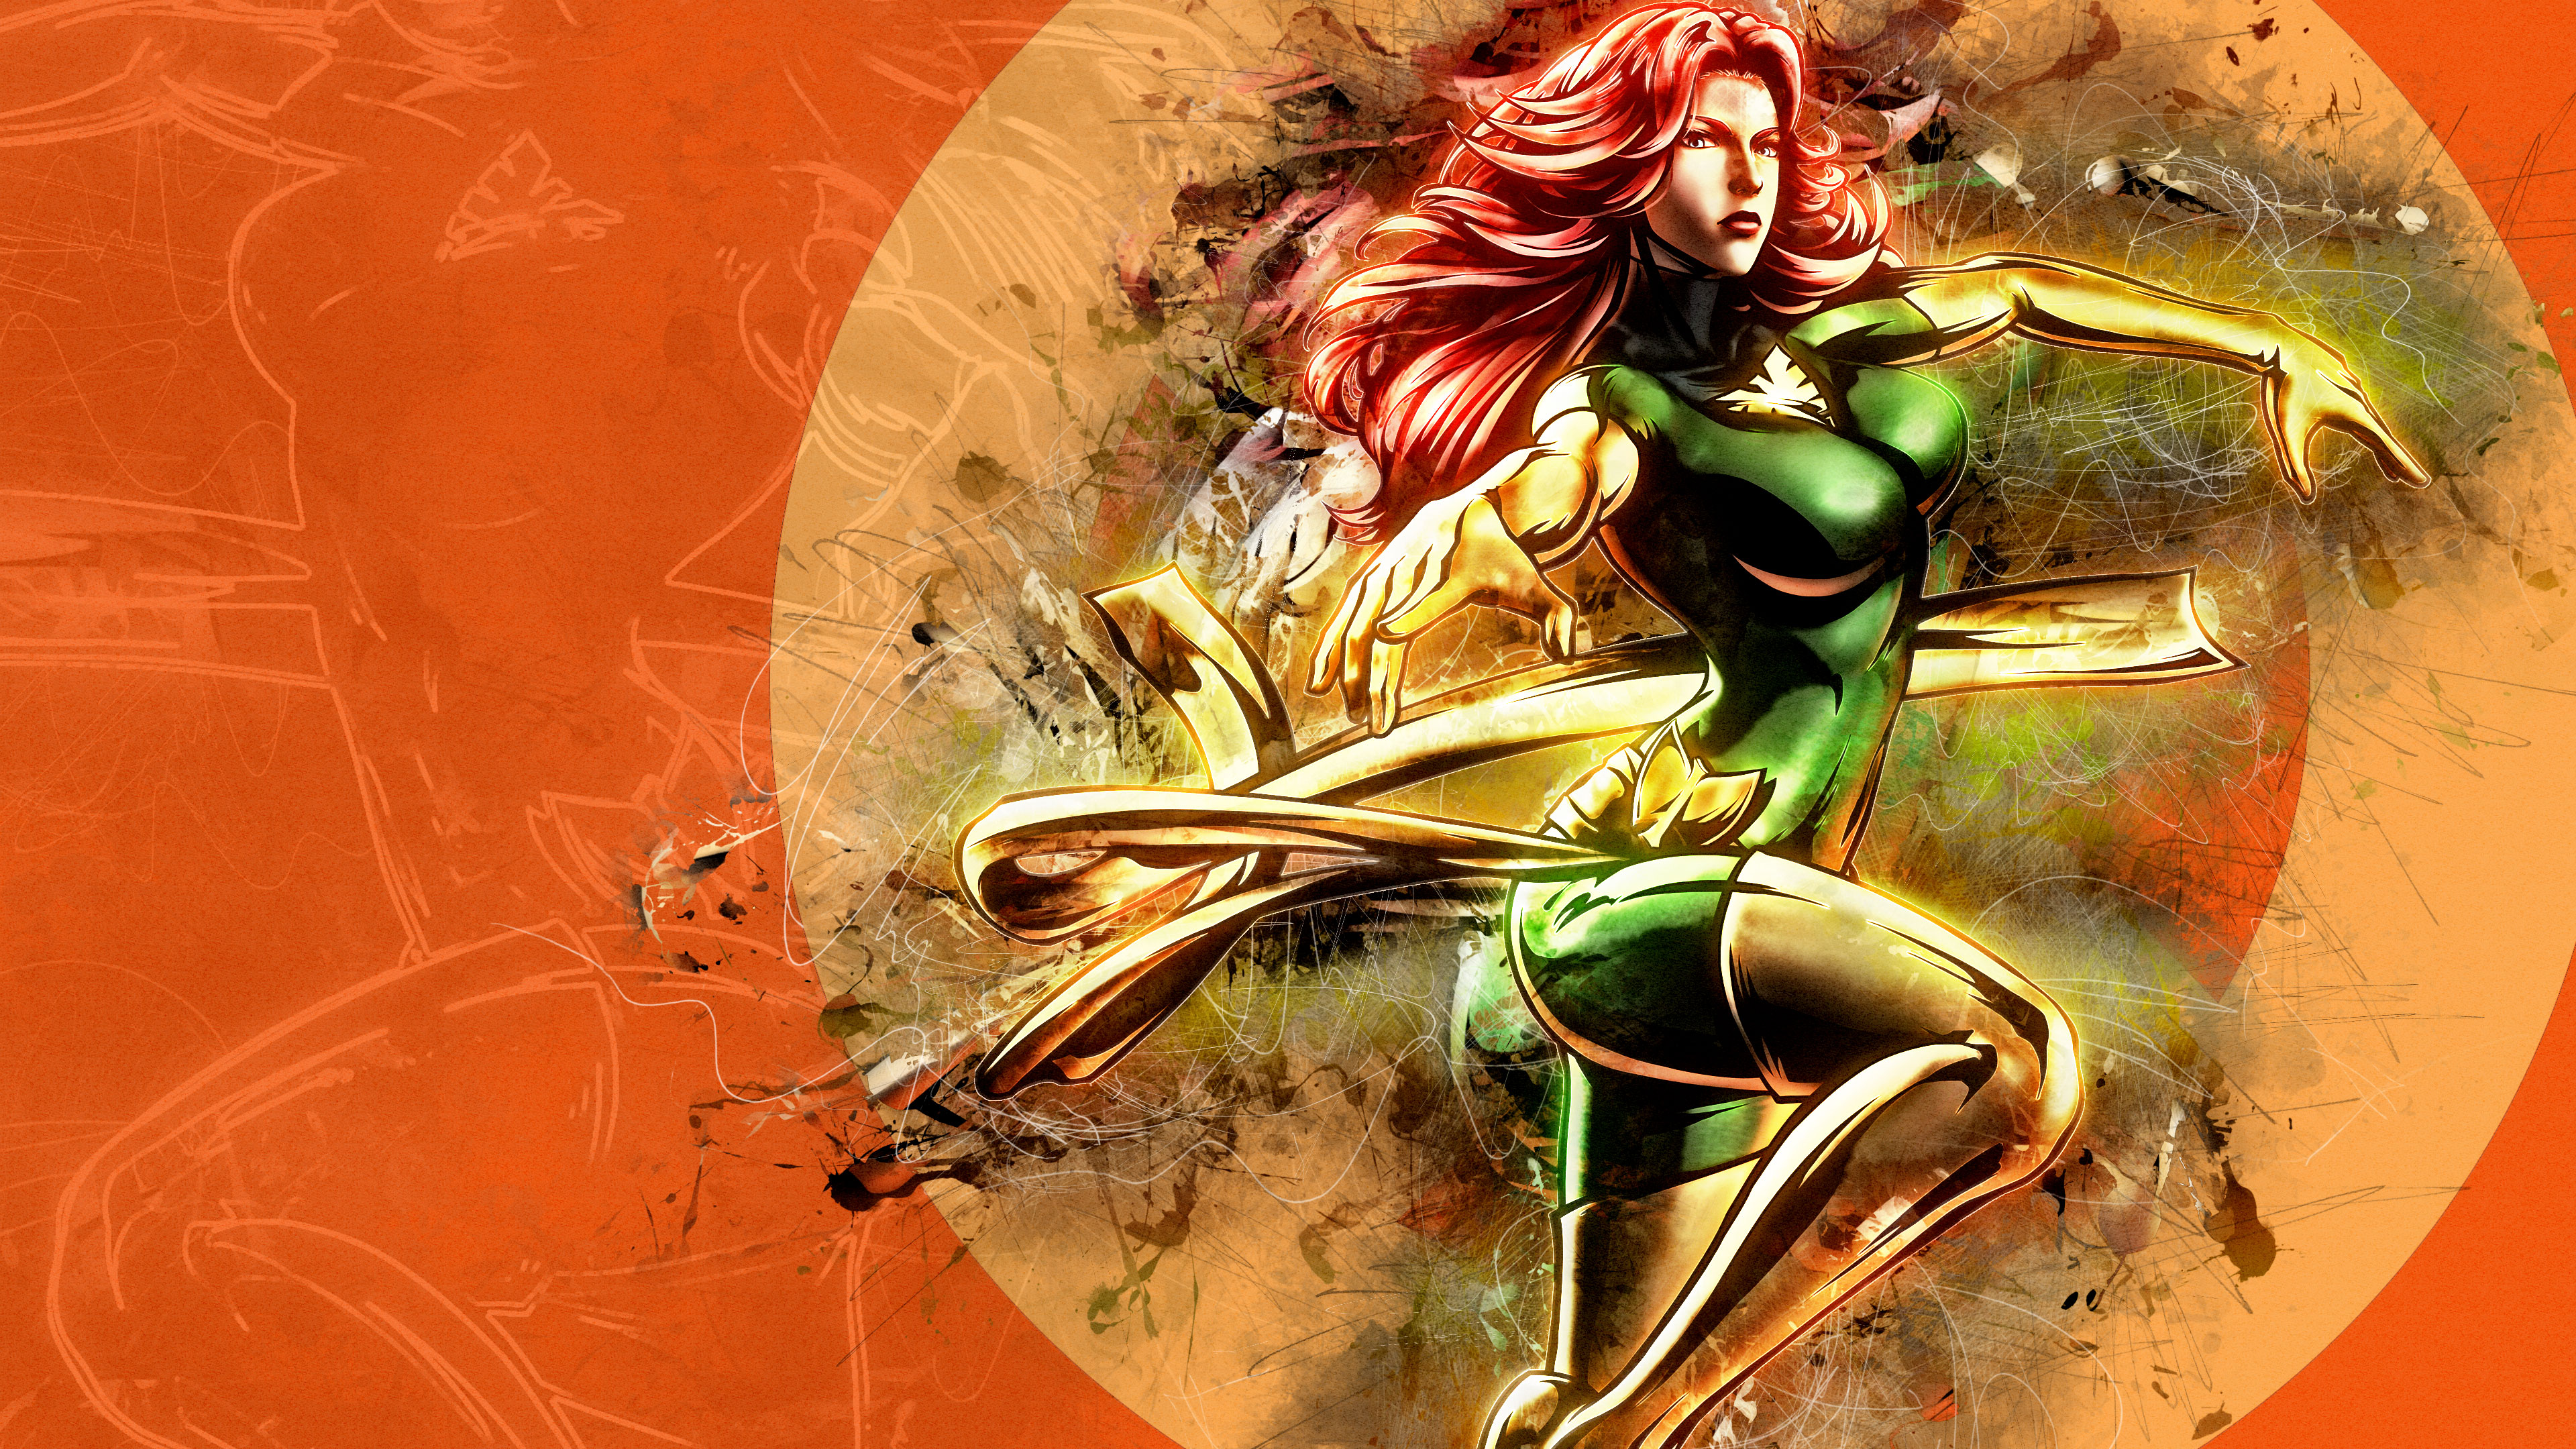 General 3840x2160 hero comics artwork X-Men Jean Grey phoenix Marvel vs. Capcom 3: Fate of Two Worlds Marvel Vs. Capcom digital art